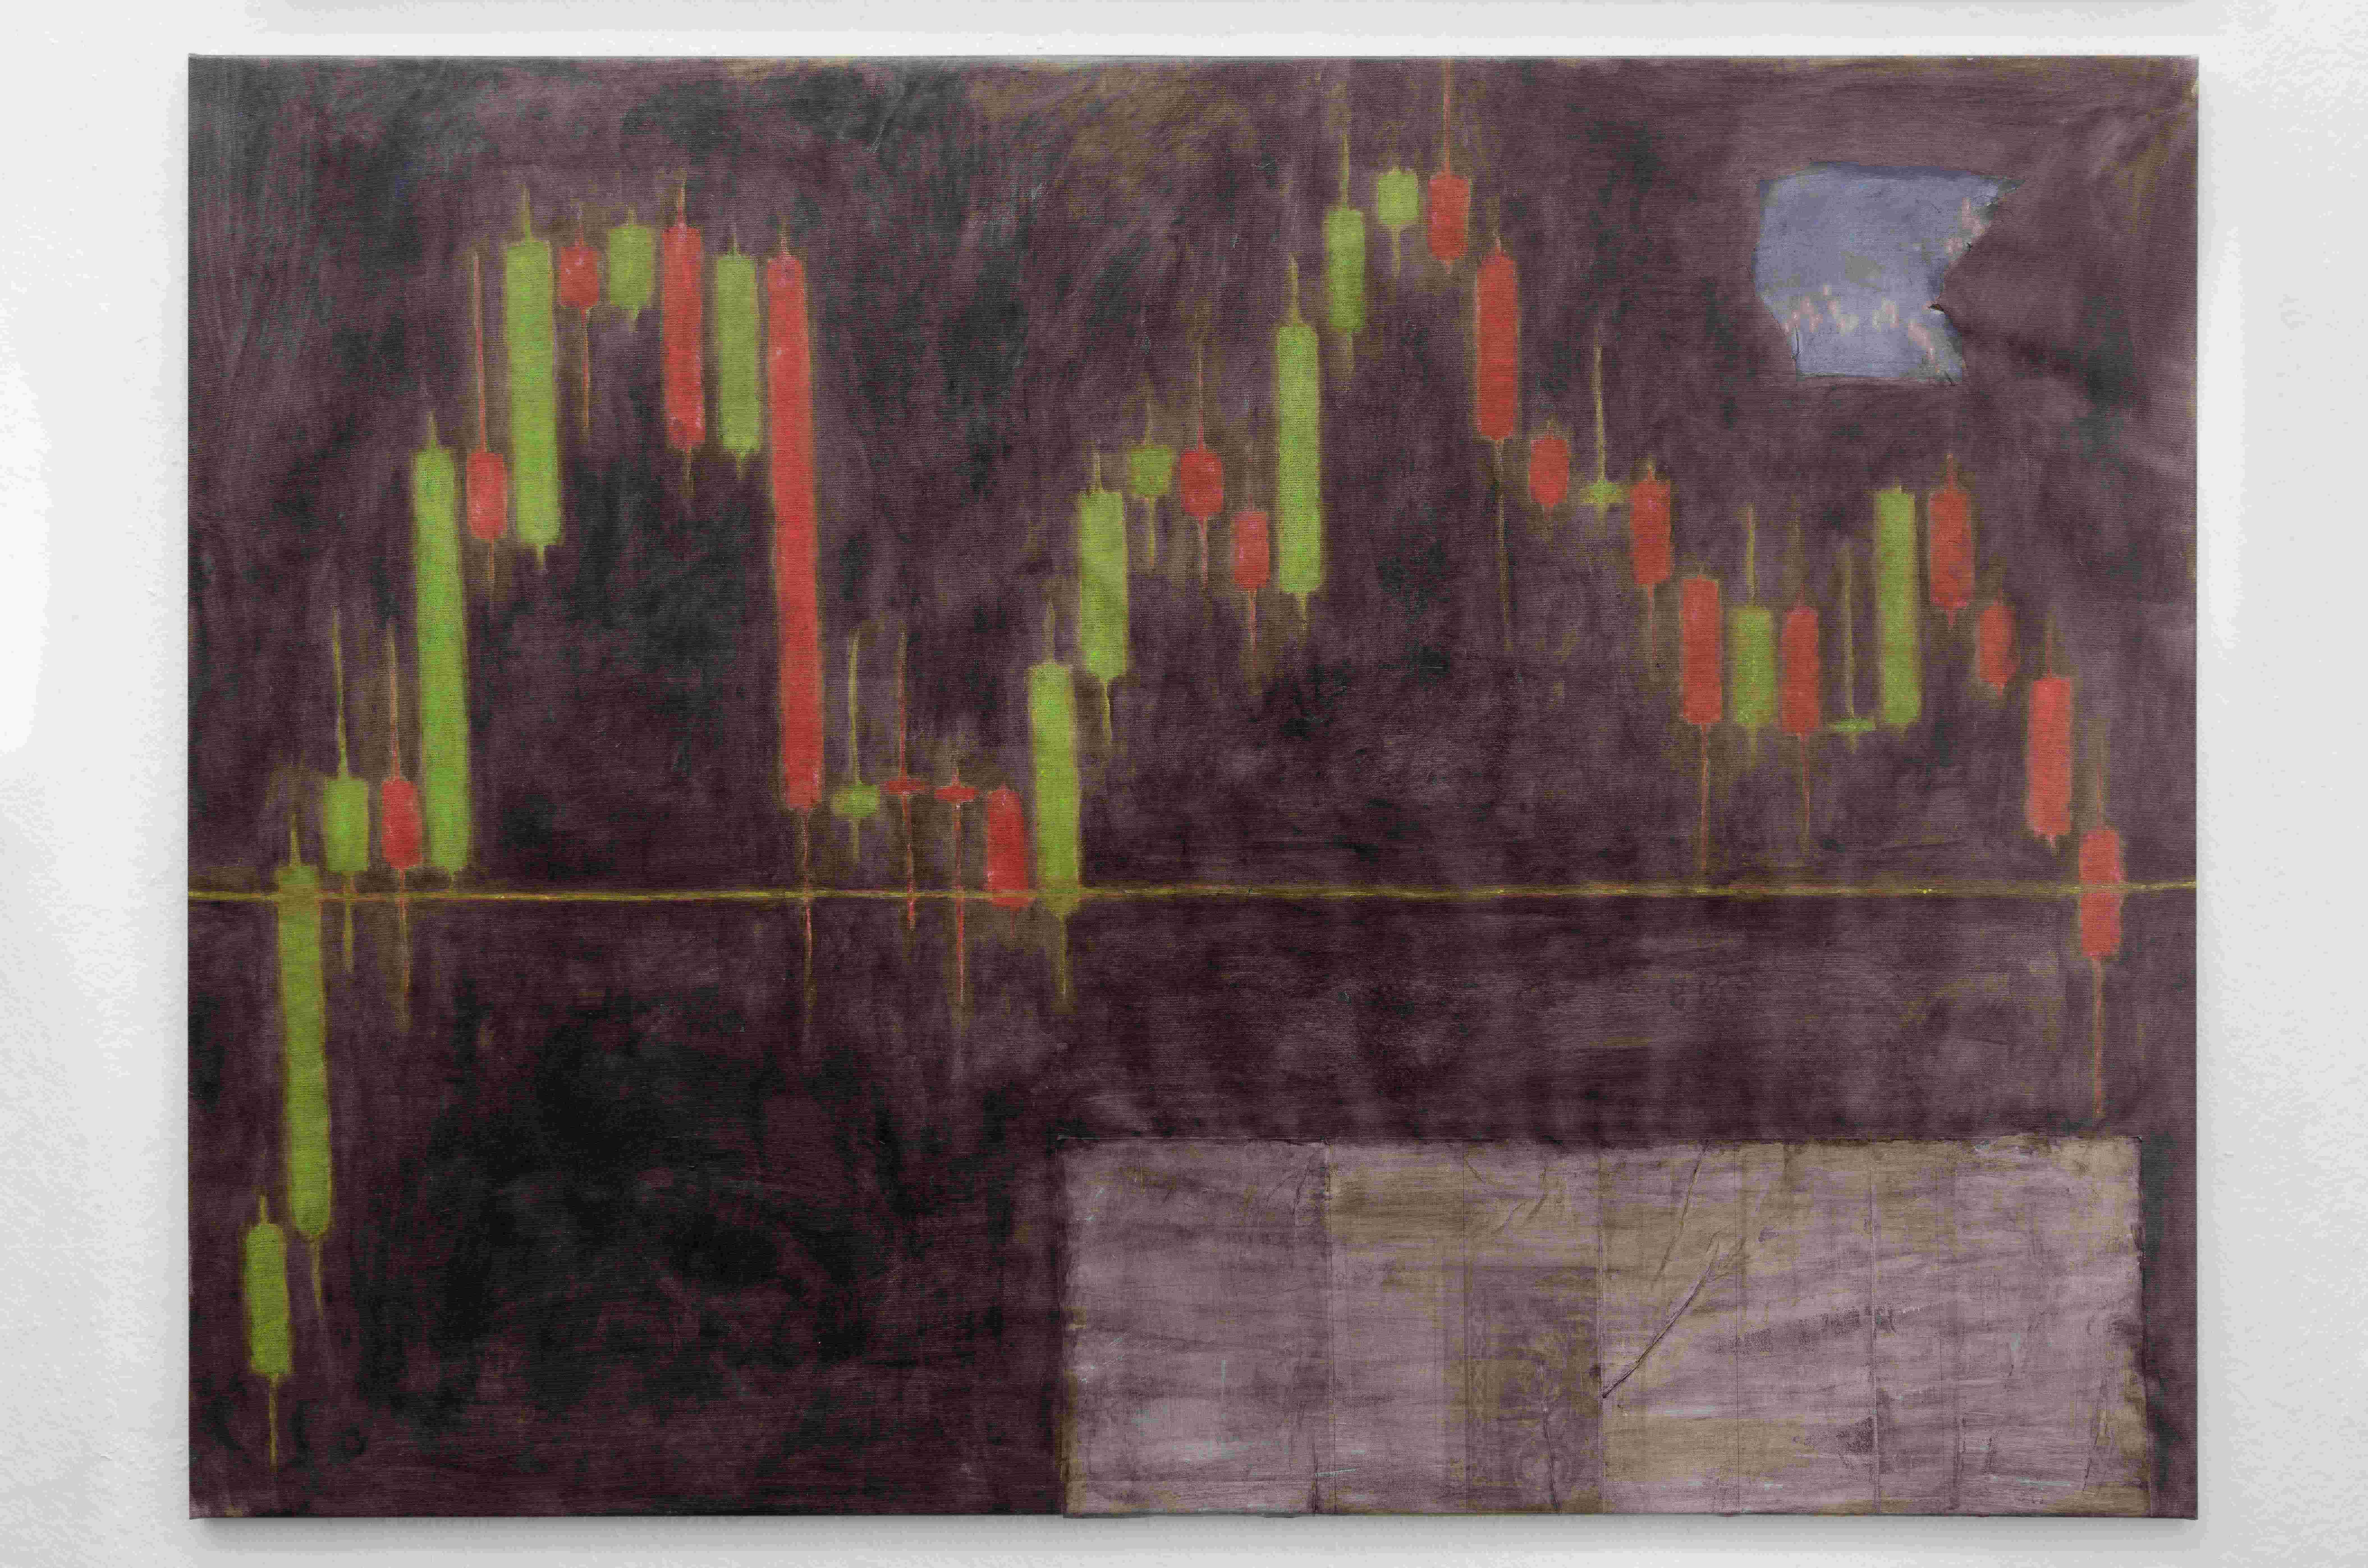 Andy Schumacher, btc top 2021, 2022, Oil, paper on canvas, 150cm x 120cm